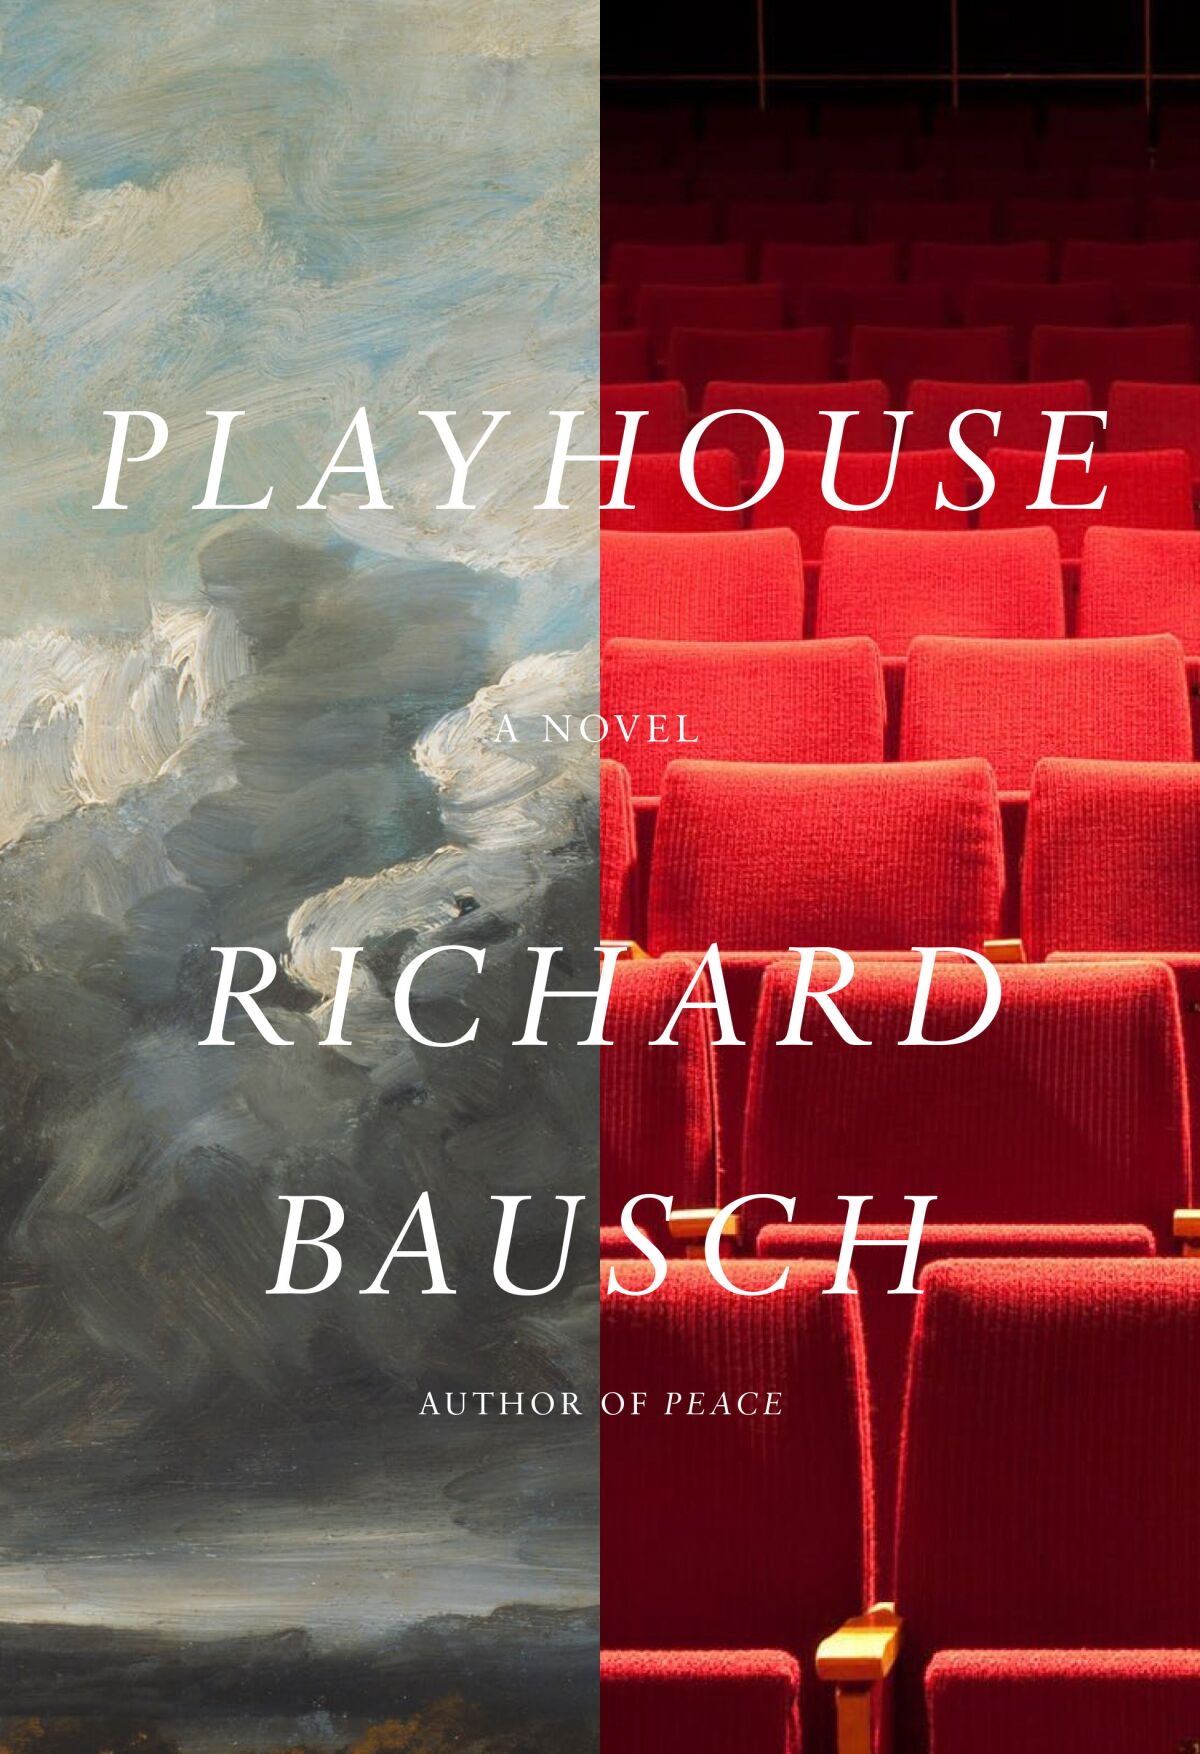 "Playhouse" by Richard Bausch